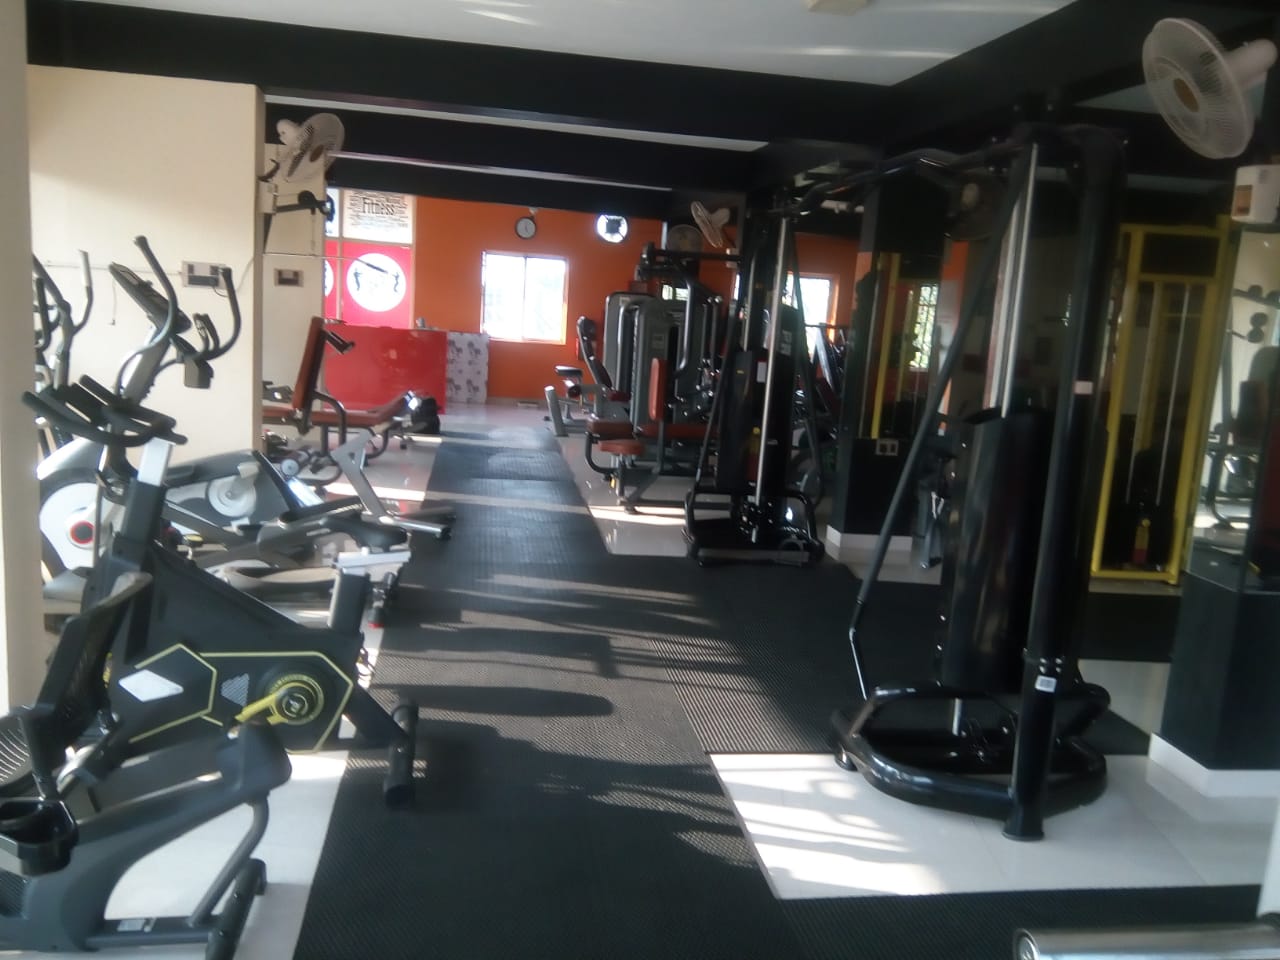 Exercise Equipment in Trivandrum, elliptical machine in Trivandrum, Treadmills, Online Fitness Equipment, Home Fitness Equipment